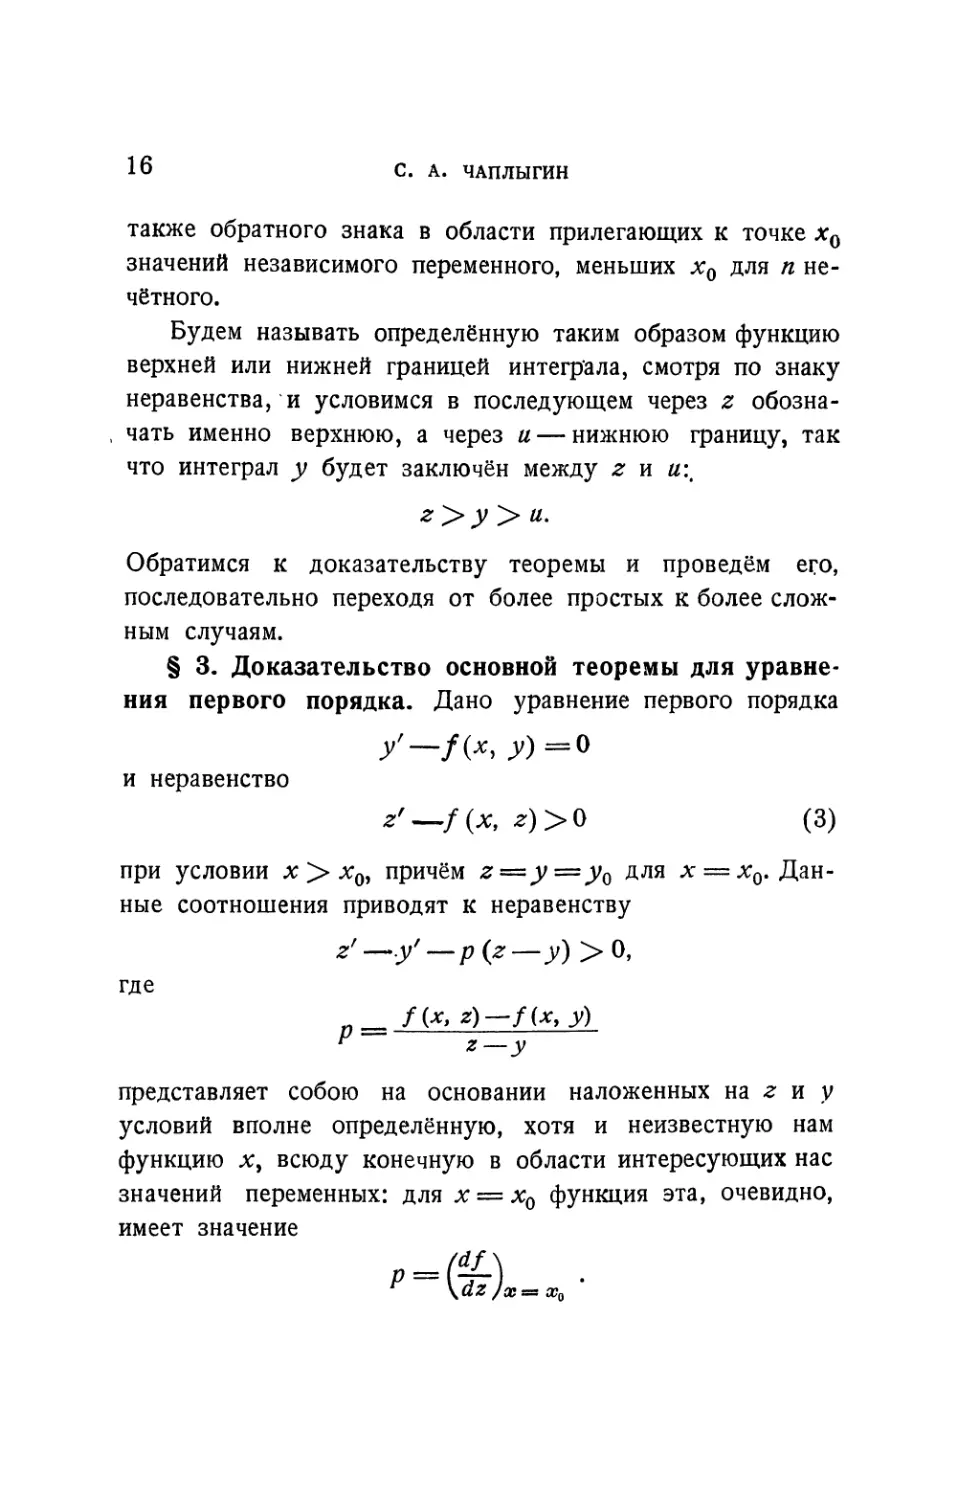 § 3. Доказательство основной теоремы для уравнения первого порядка